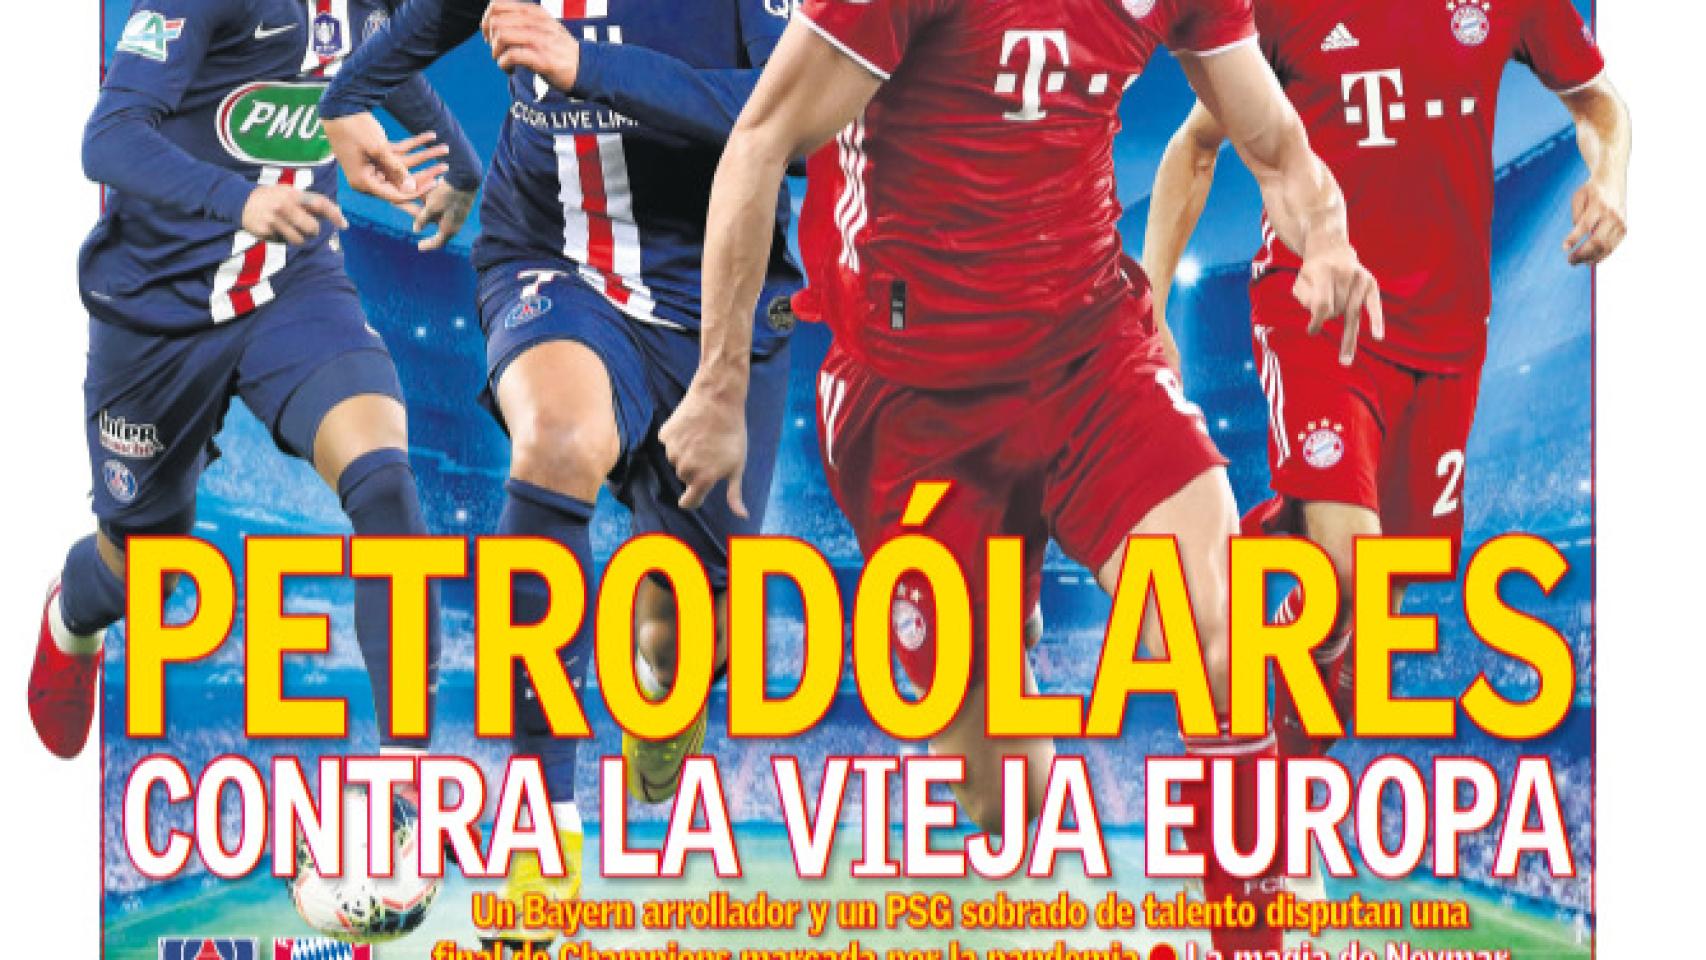 La portada del Diario As (23-08-2020)